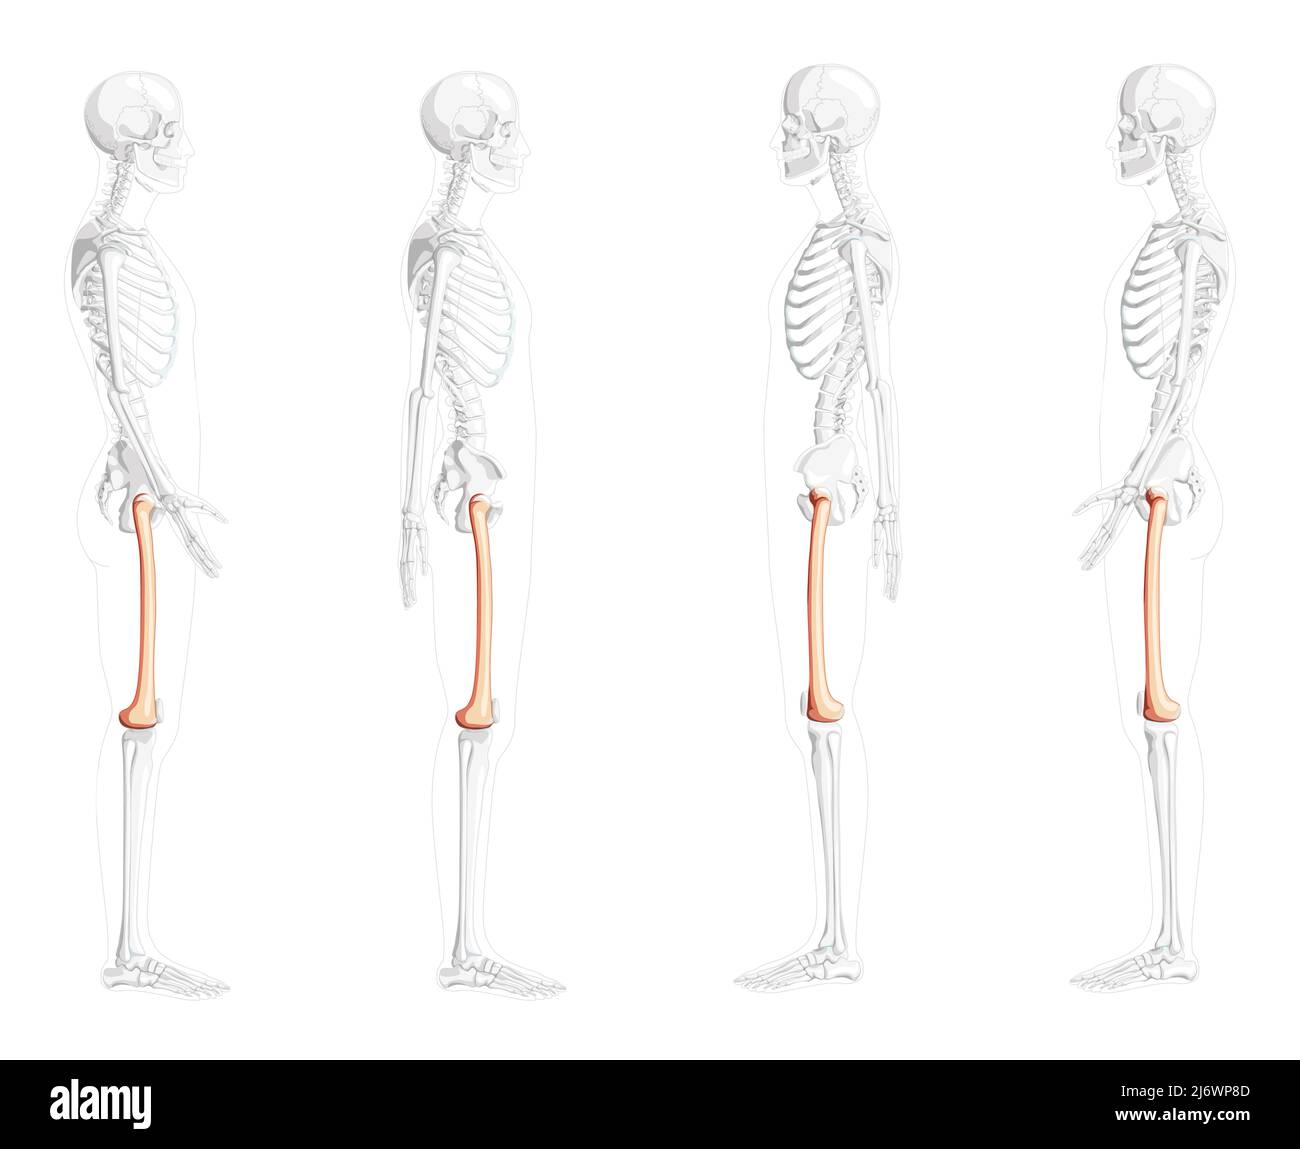 Scheletro femore coscia osso Vista laterale umana con posizione delle ossa parzialmente trasparente. 3D correzione anatomica realistico piatto naturale concetto di colore illustrazione vettoriale isolato su sfondo bianco Illustrazione Vettoriale